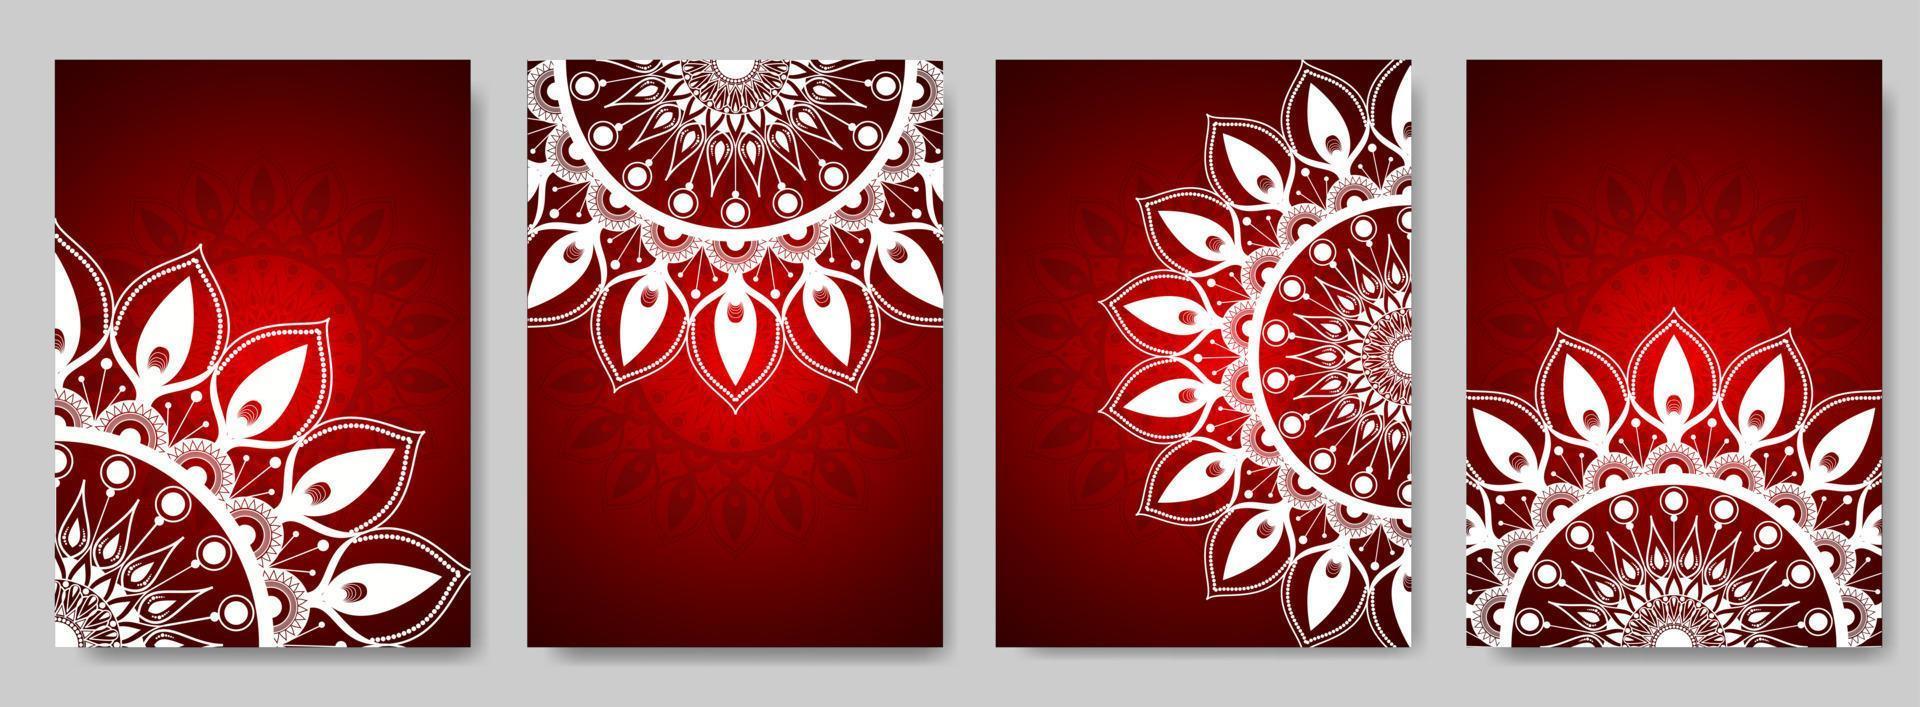 conjunto de fondos abstractos con adornos de mandala. el diseño de fondo rojo se puede utilizar para textiles, tarjetas de felicitación, cubiertas. vector